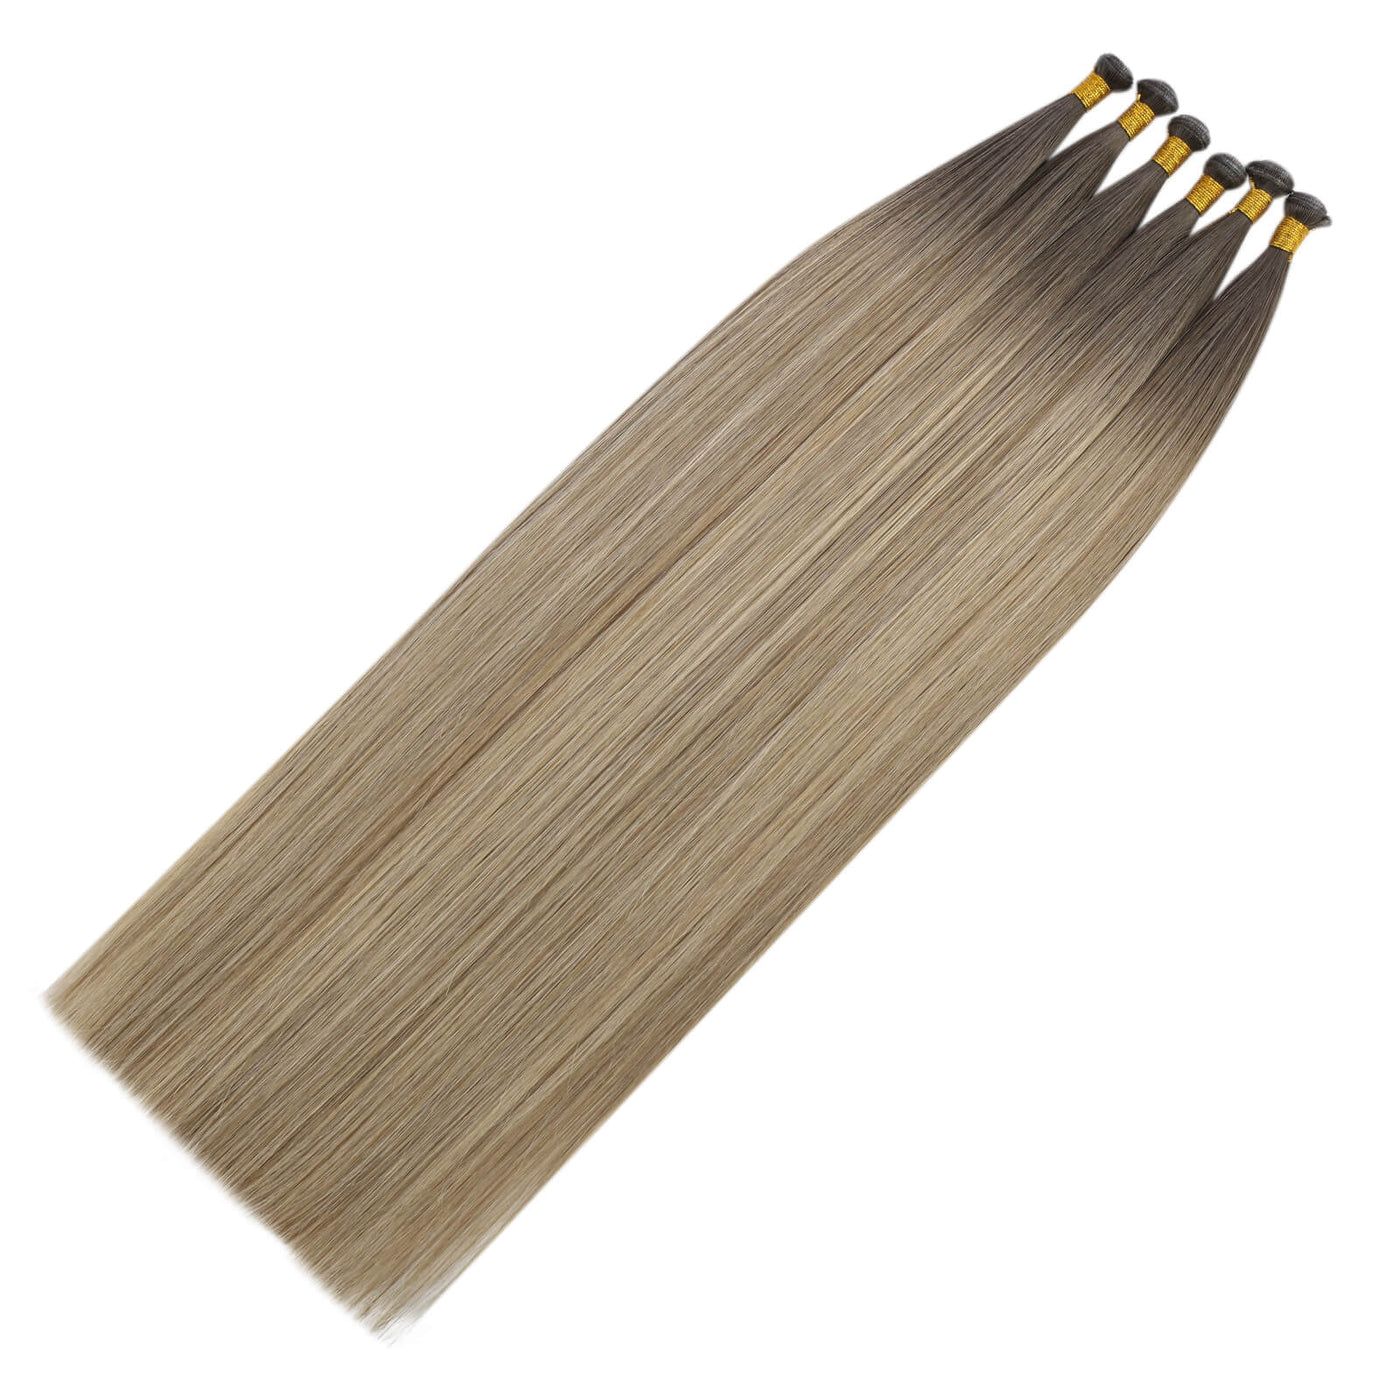 [virgin+]Genius Weft Hair Extensions virgin+ Hair Bundles Human Straight Weave Brown Blonde#5/7/20